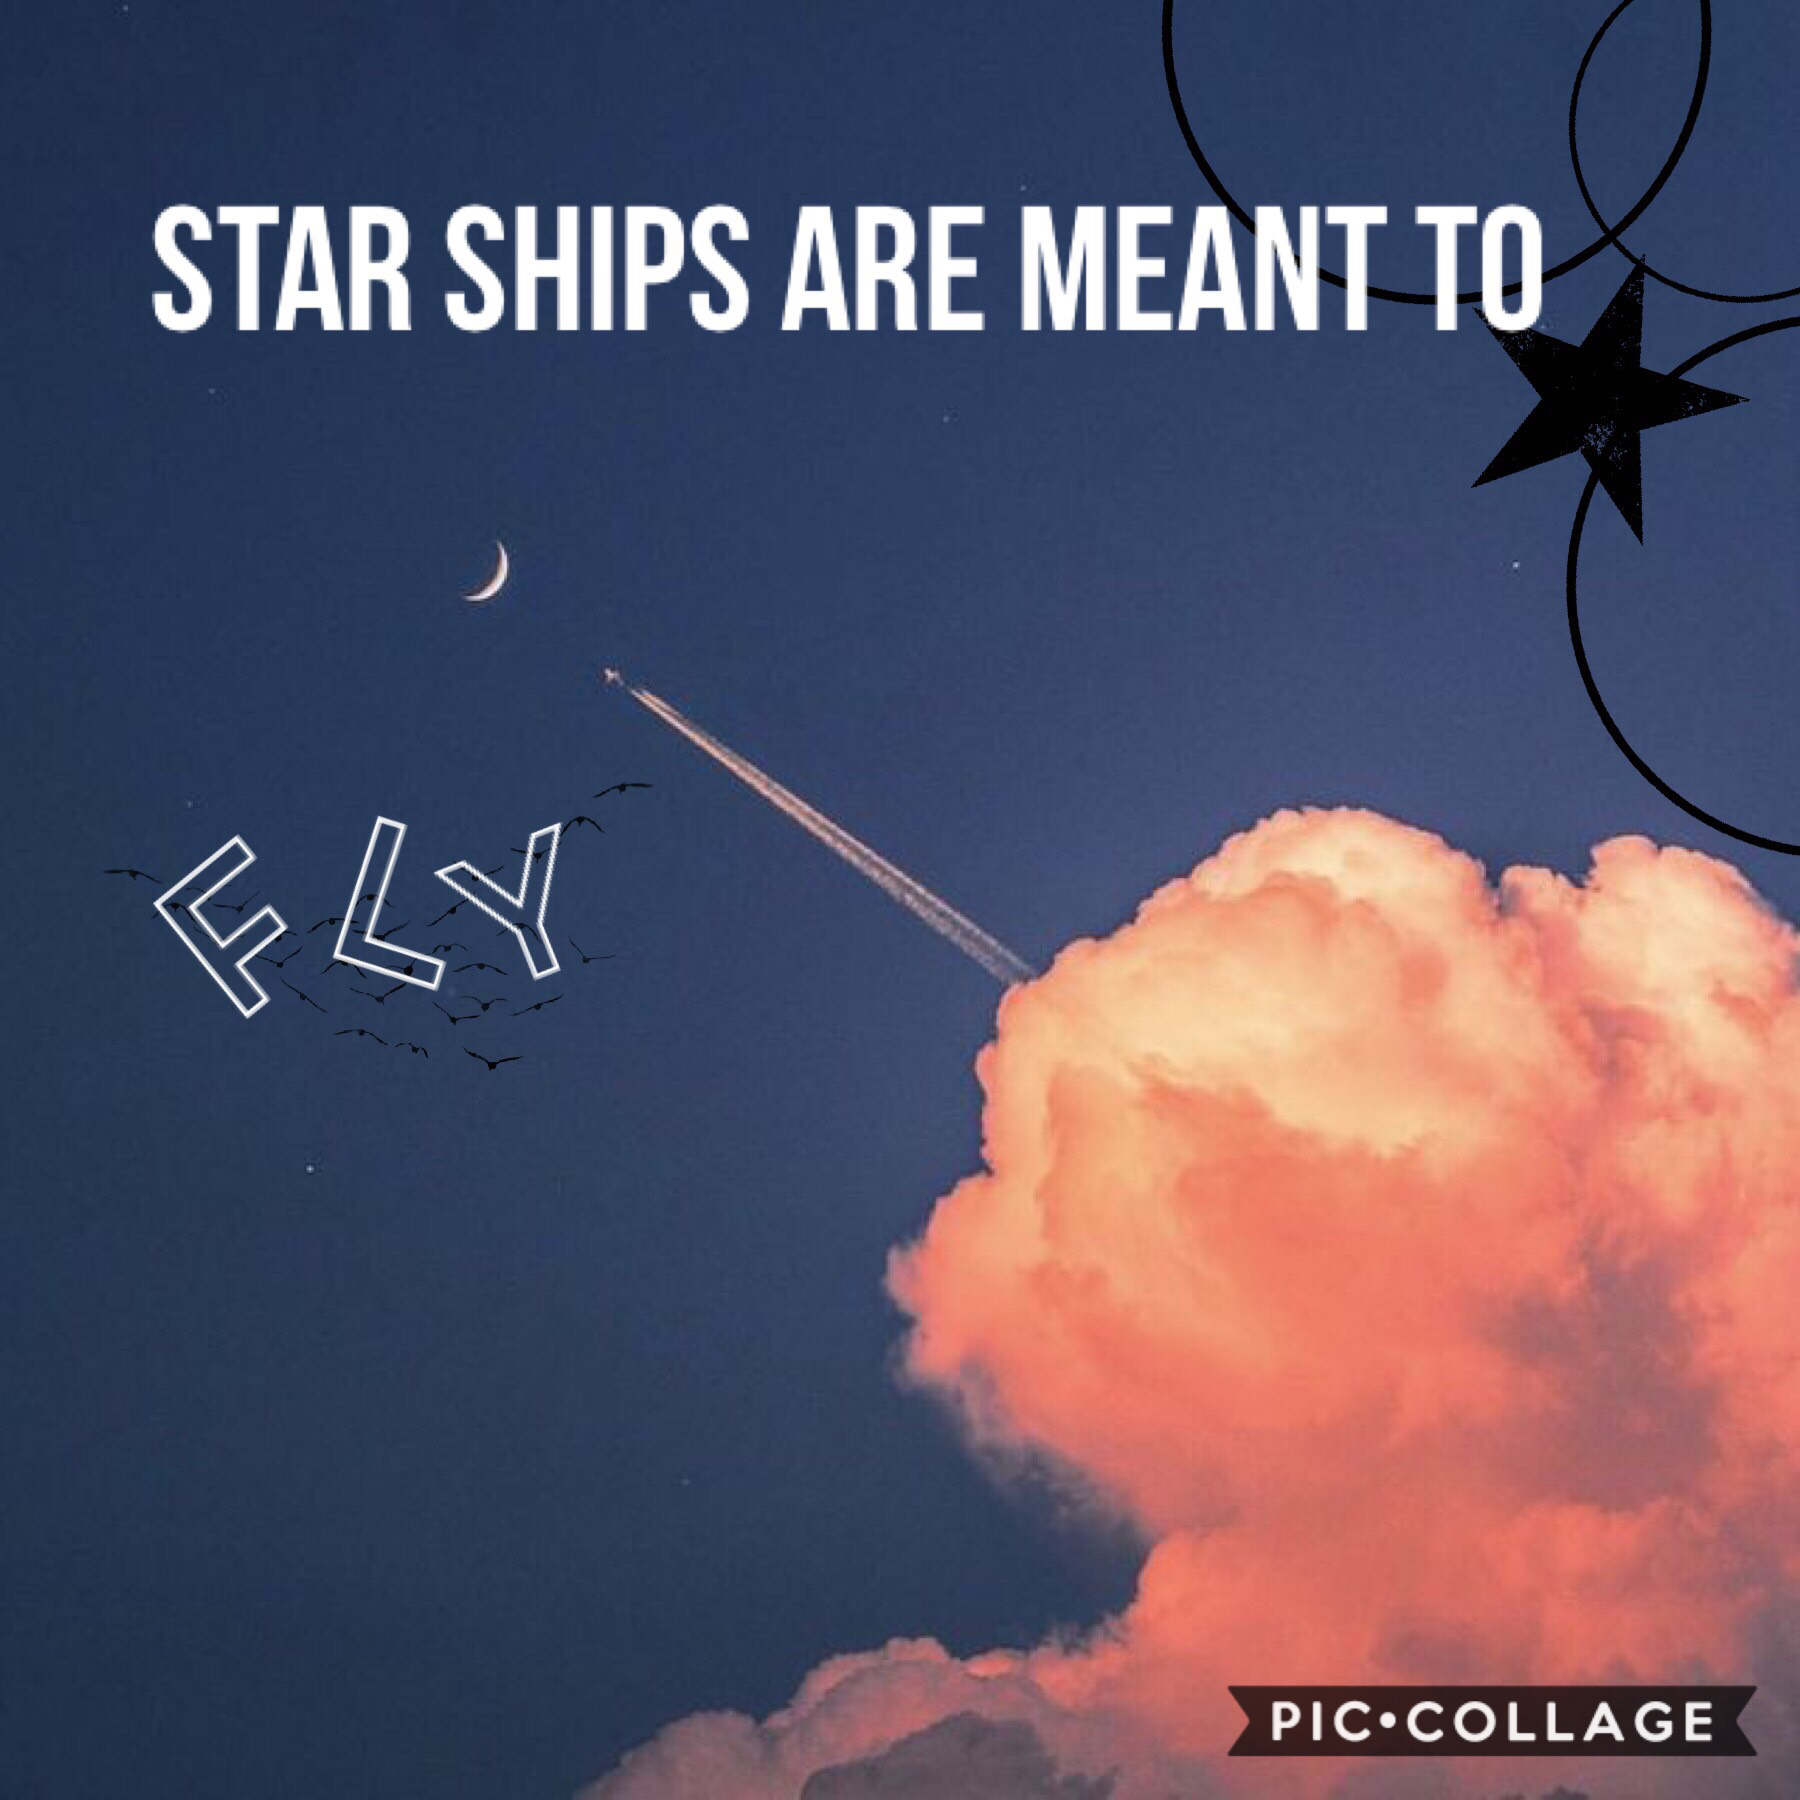 Star ships ✈️ 🚀 